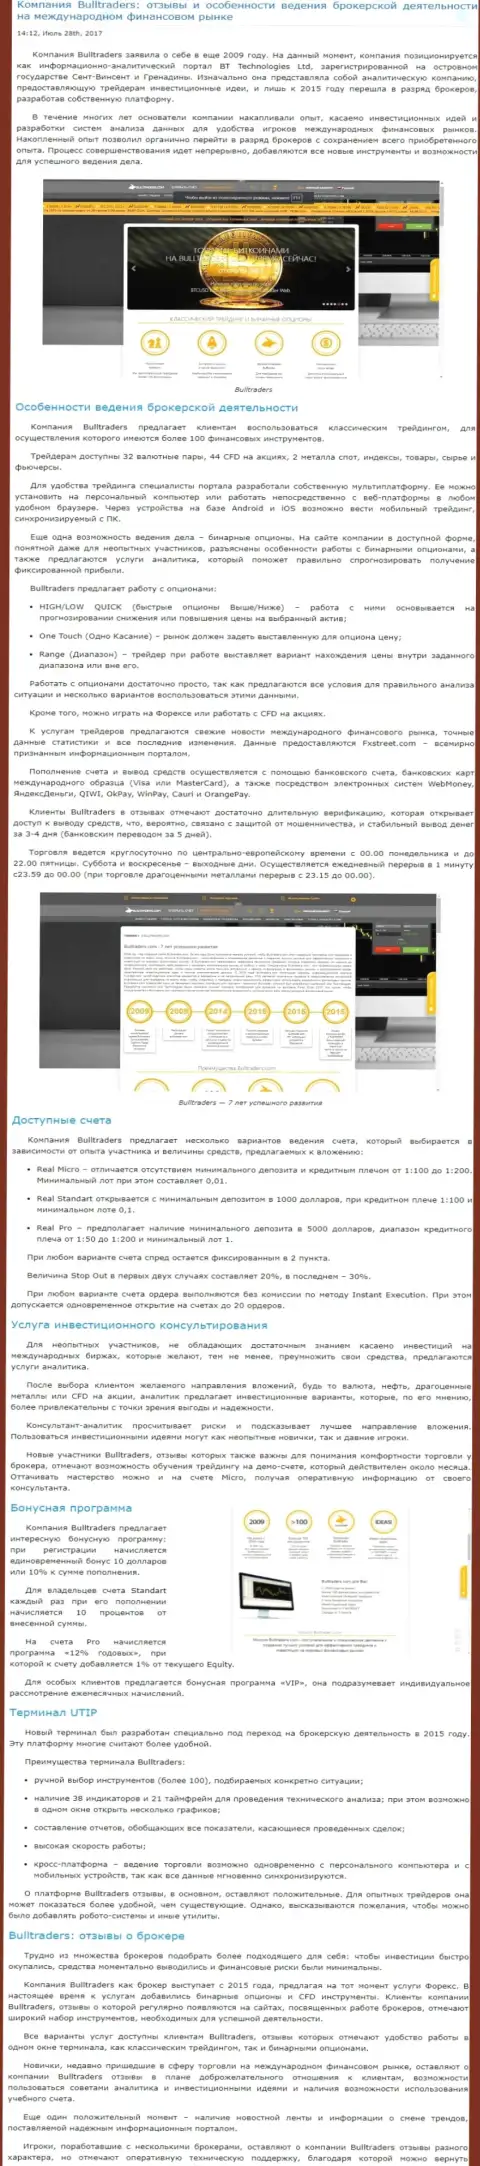 Обзор правил торгов forex компании БуллТрейдерс на мировом рынке валют Форекс на web-сайте Besuccess Ru